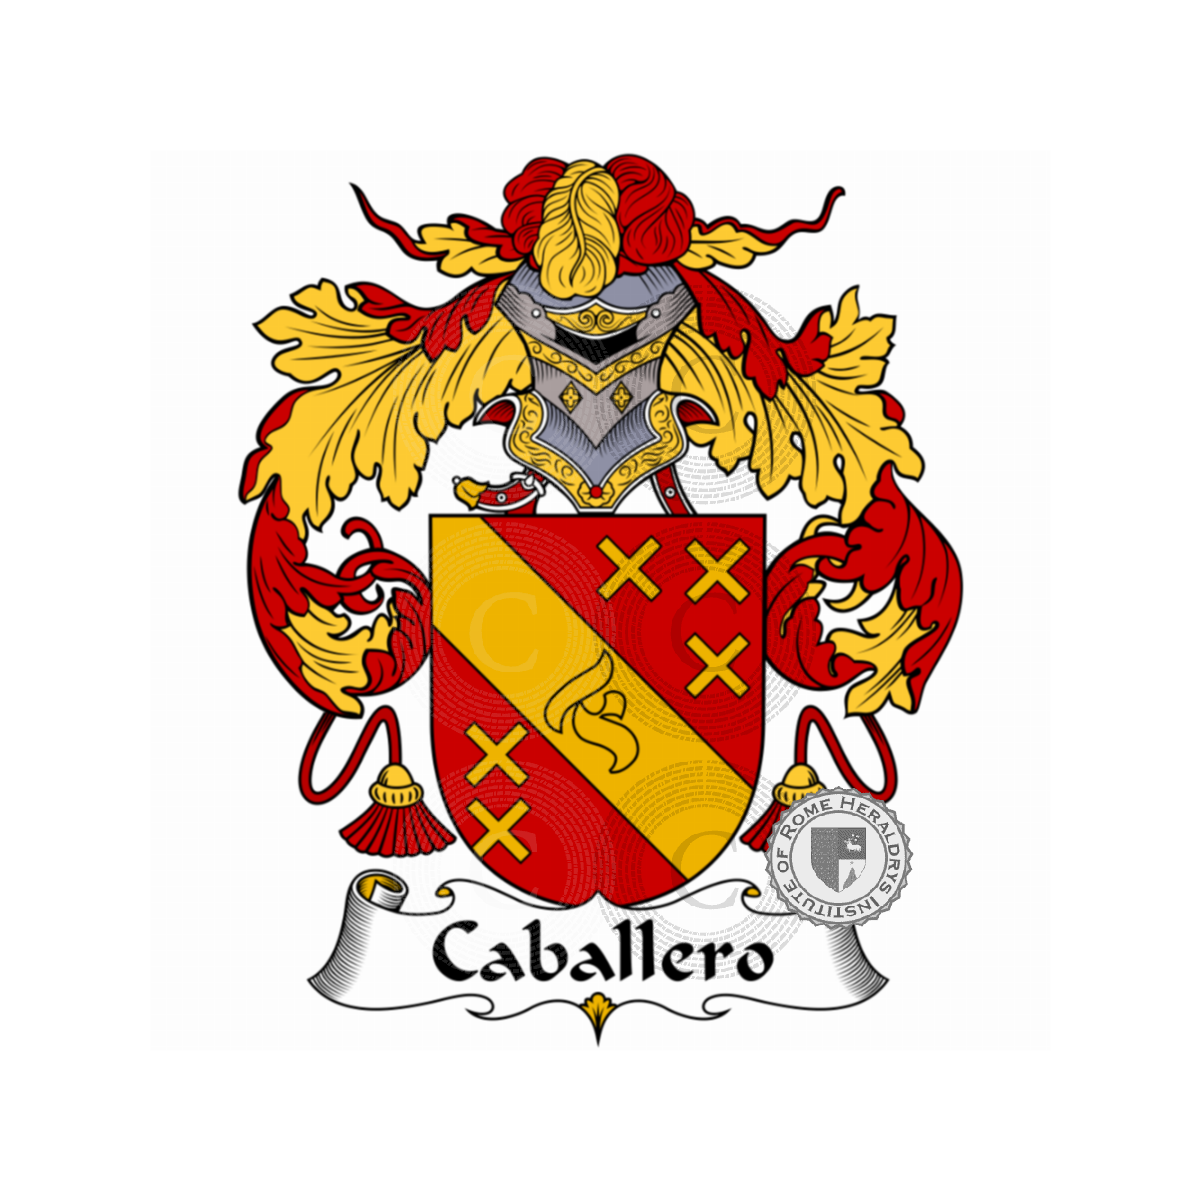 Wappen der FamilieCaballero, Caballeros